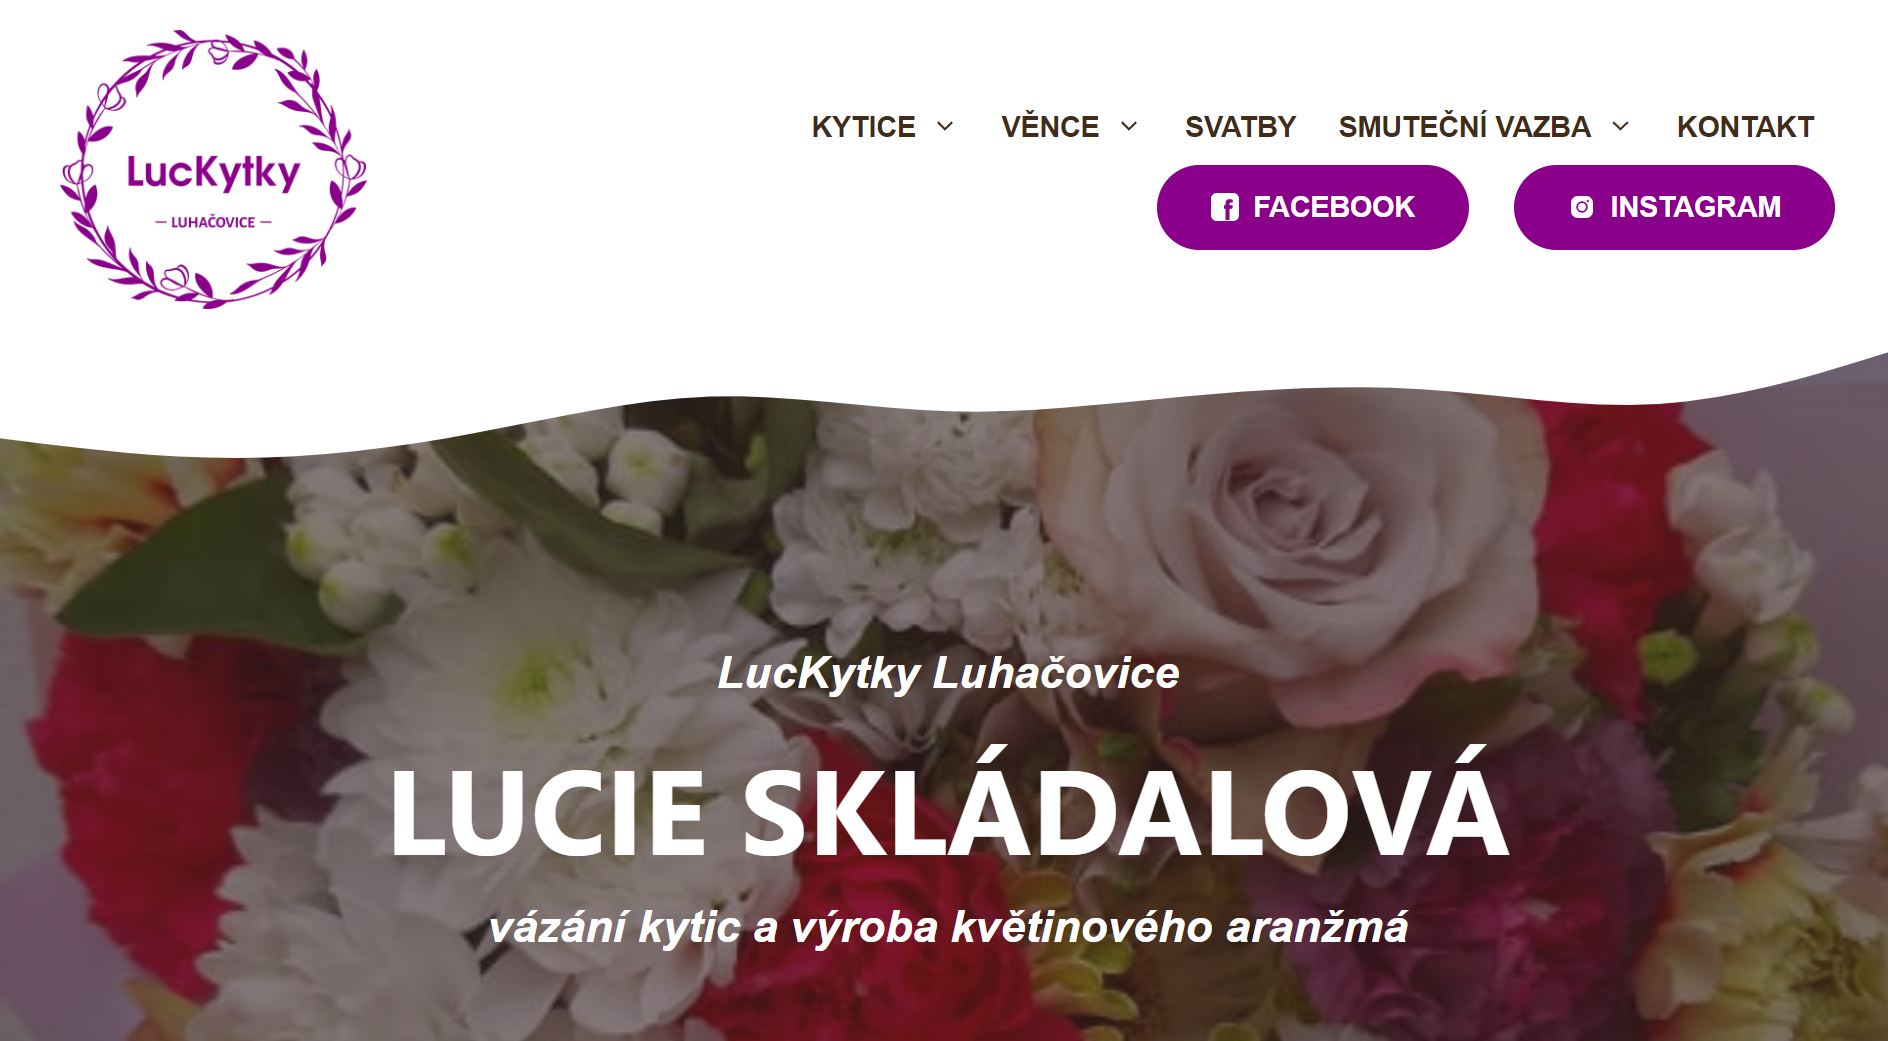 www.luckytky.cz